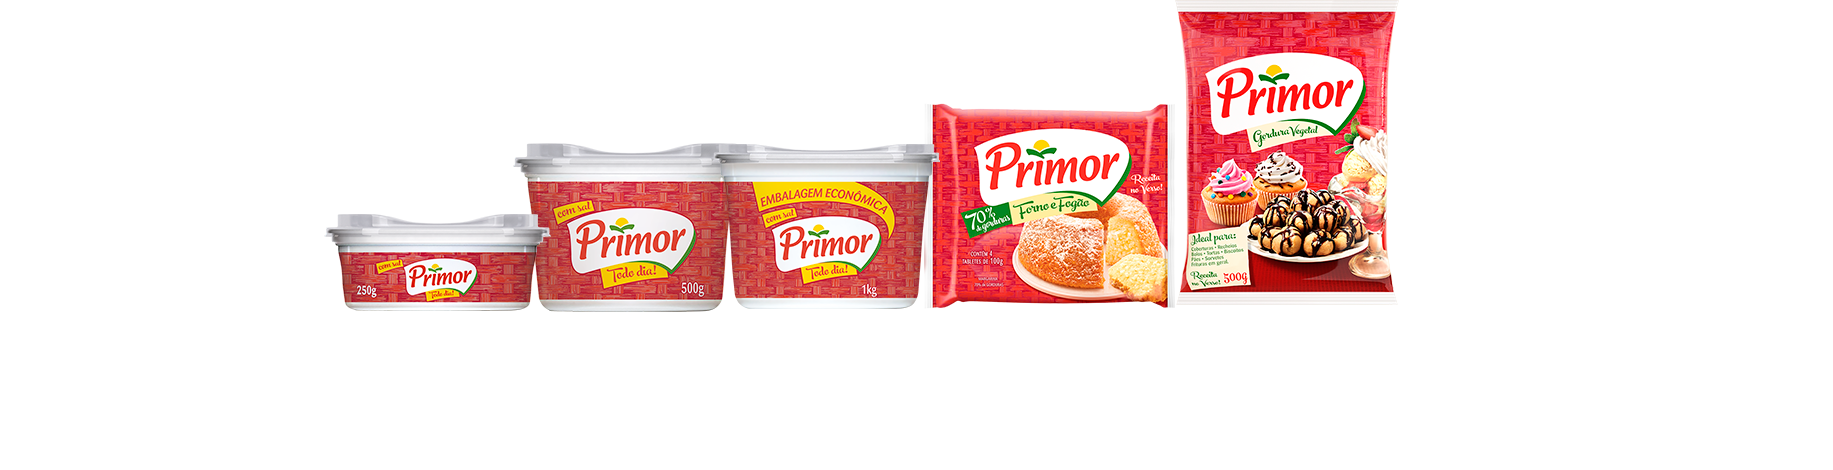 5 embalagens de alimentos da marca Primor